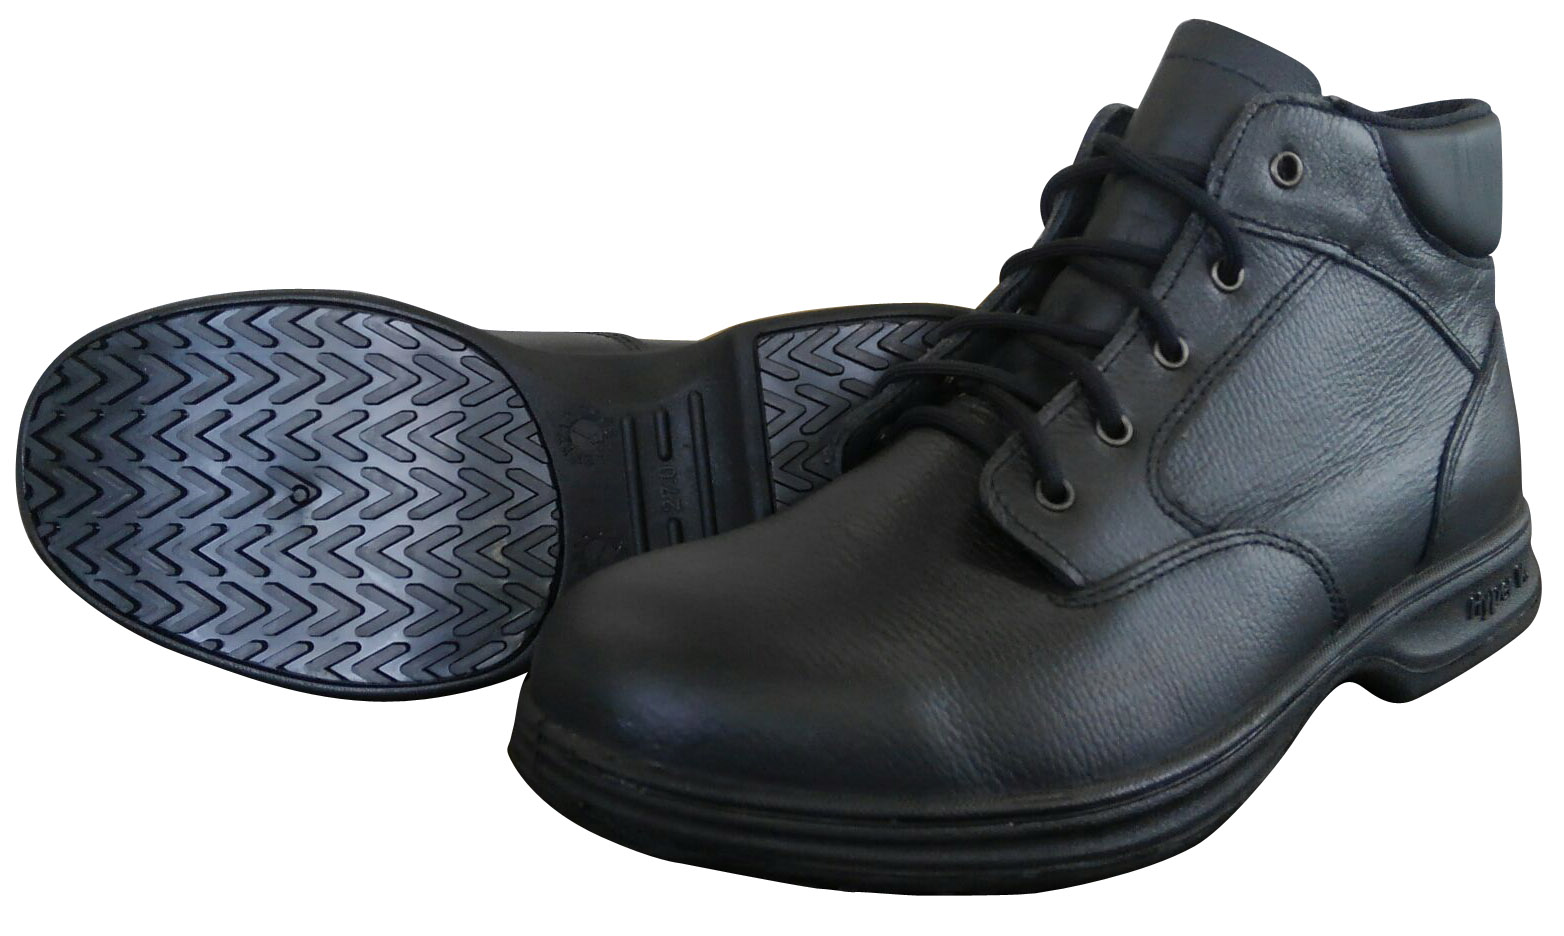 ドンケル 安全靴 半長靴 ラバー2層底 耐滑 耐延焼 JIS T8101革製S種E・F合格 R2-06 メンズ ブラック 26.0 cm - 3